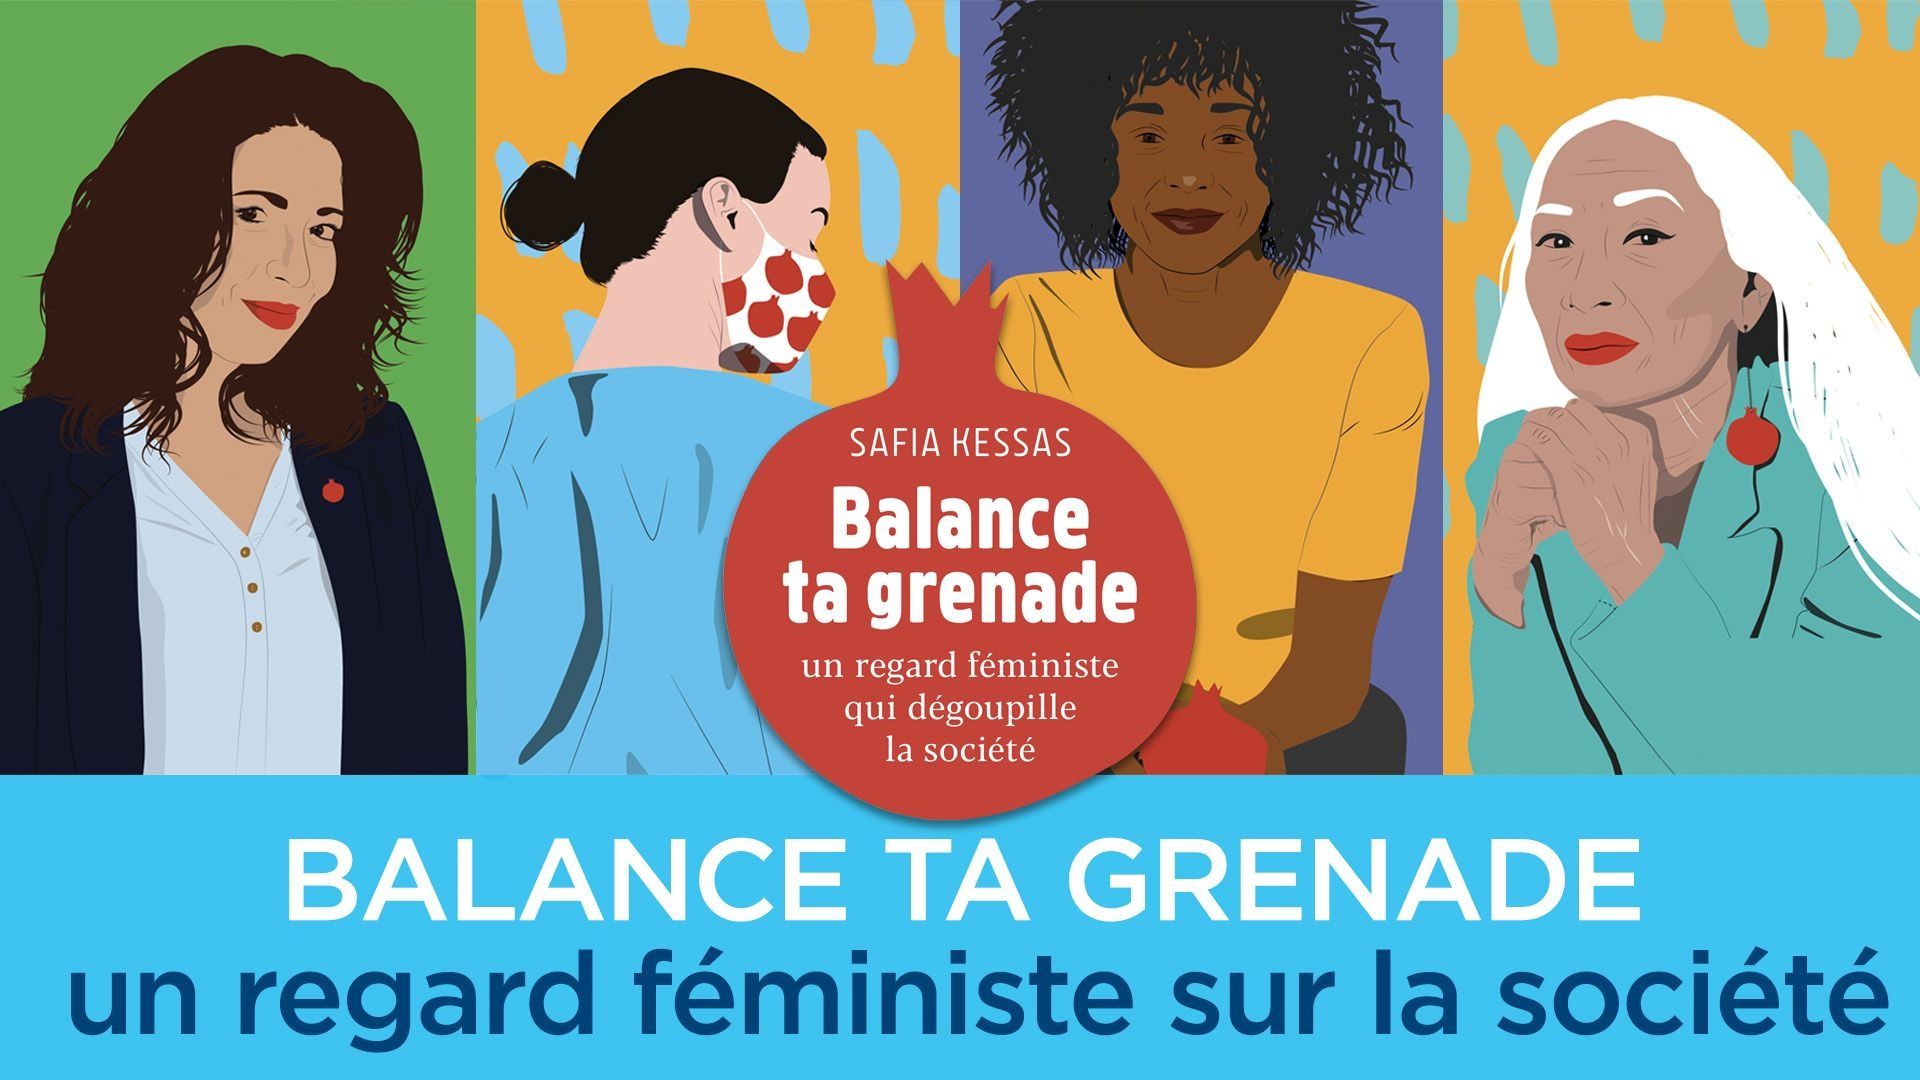 Livre de Safia Kessas : "Balance ta grenade" en lien avec sa chronique "La Grenade" en Radio sur La Première.